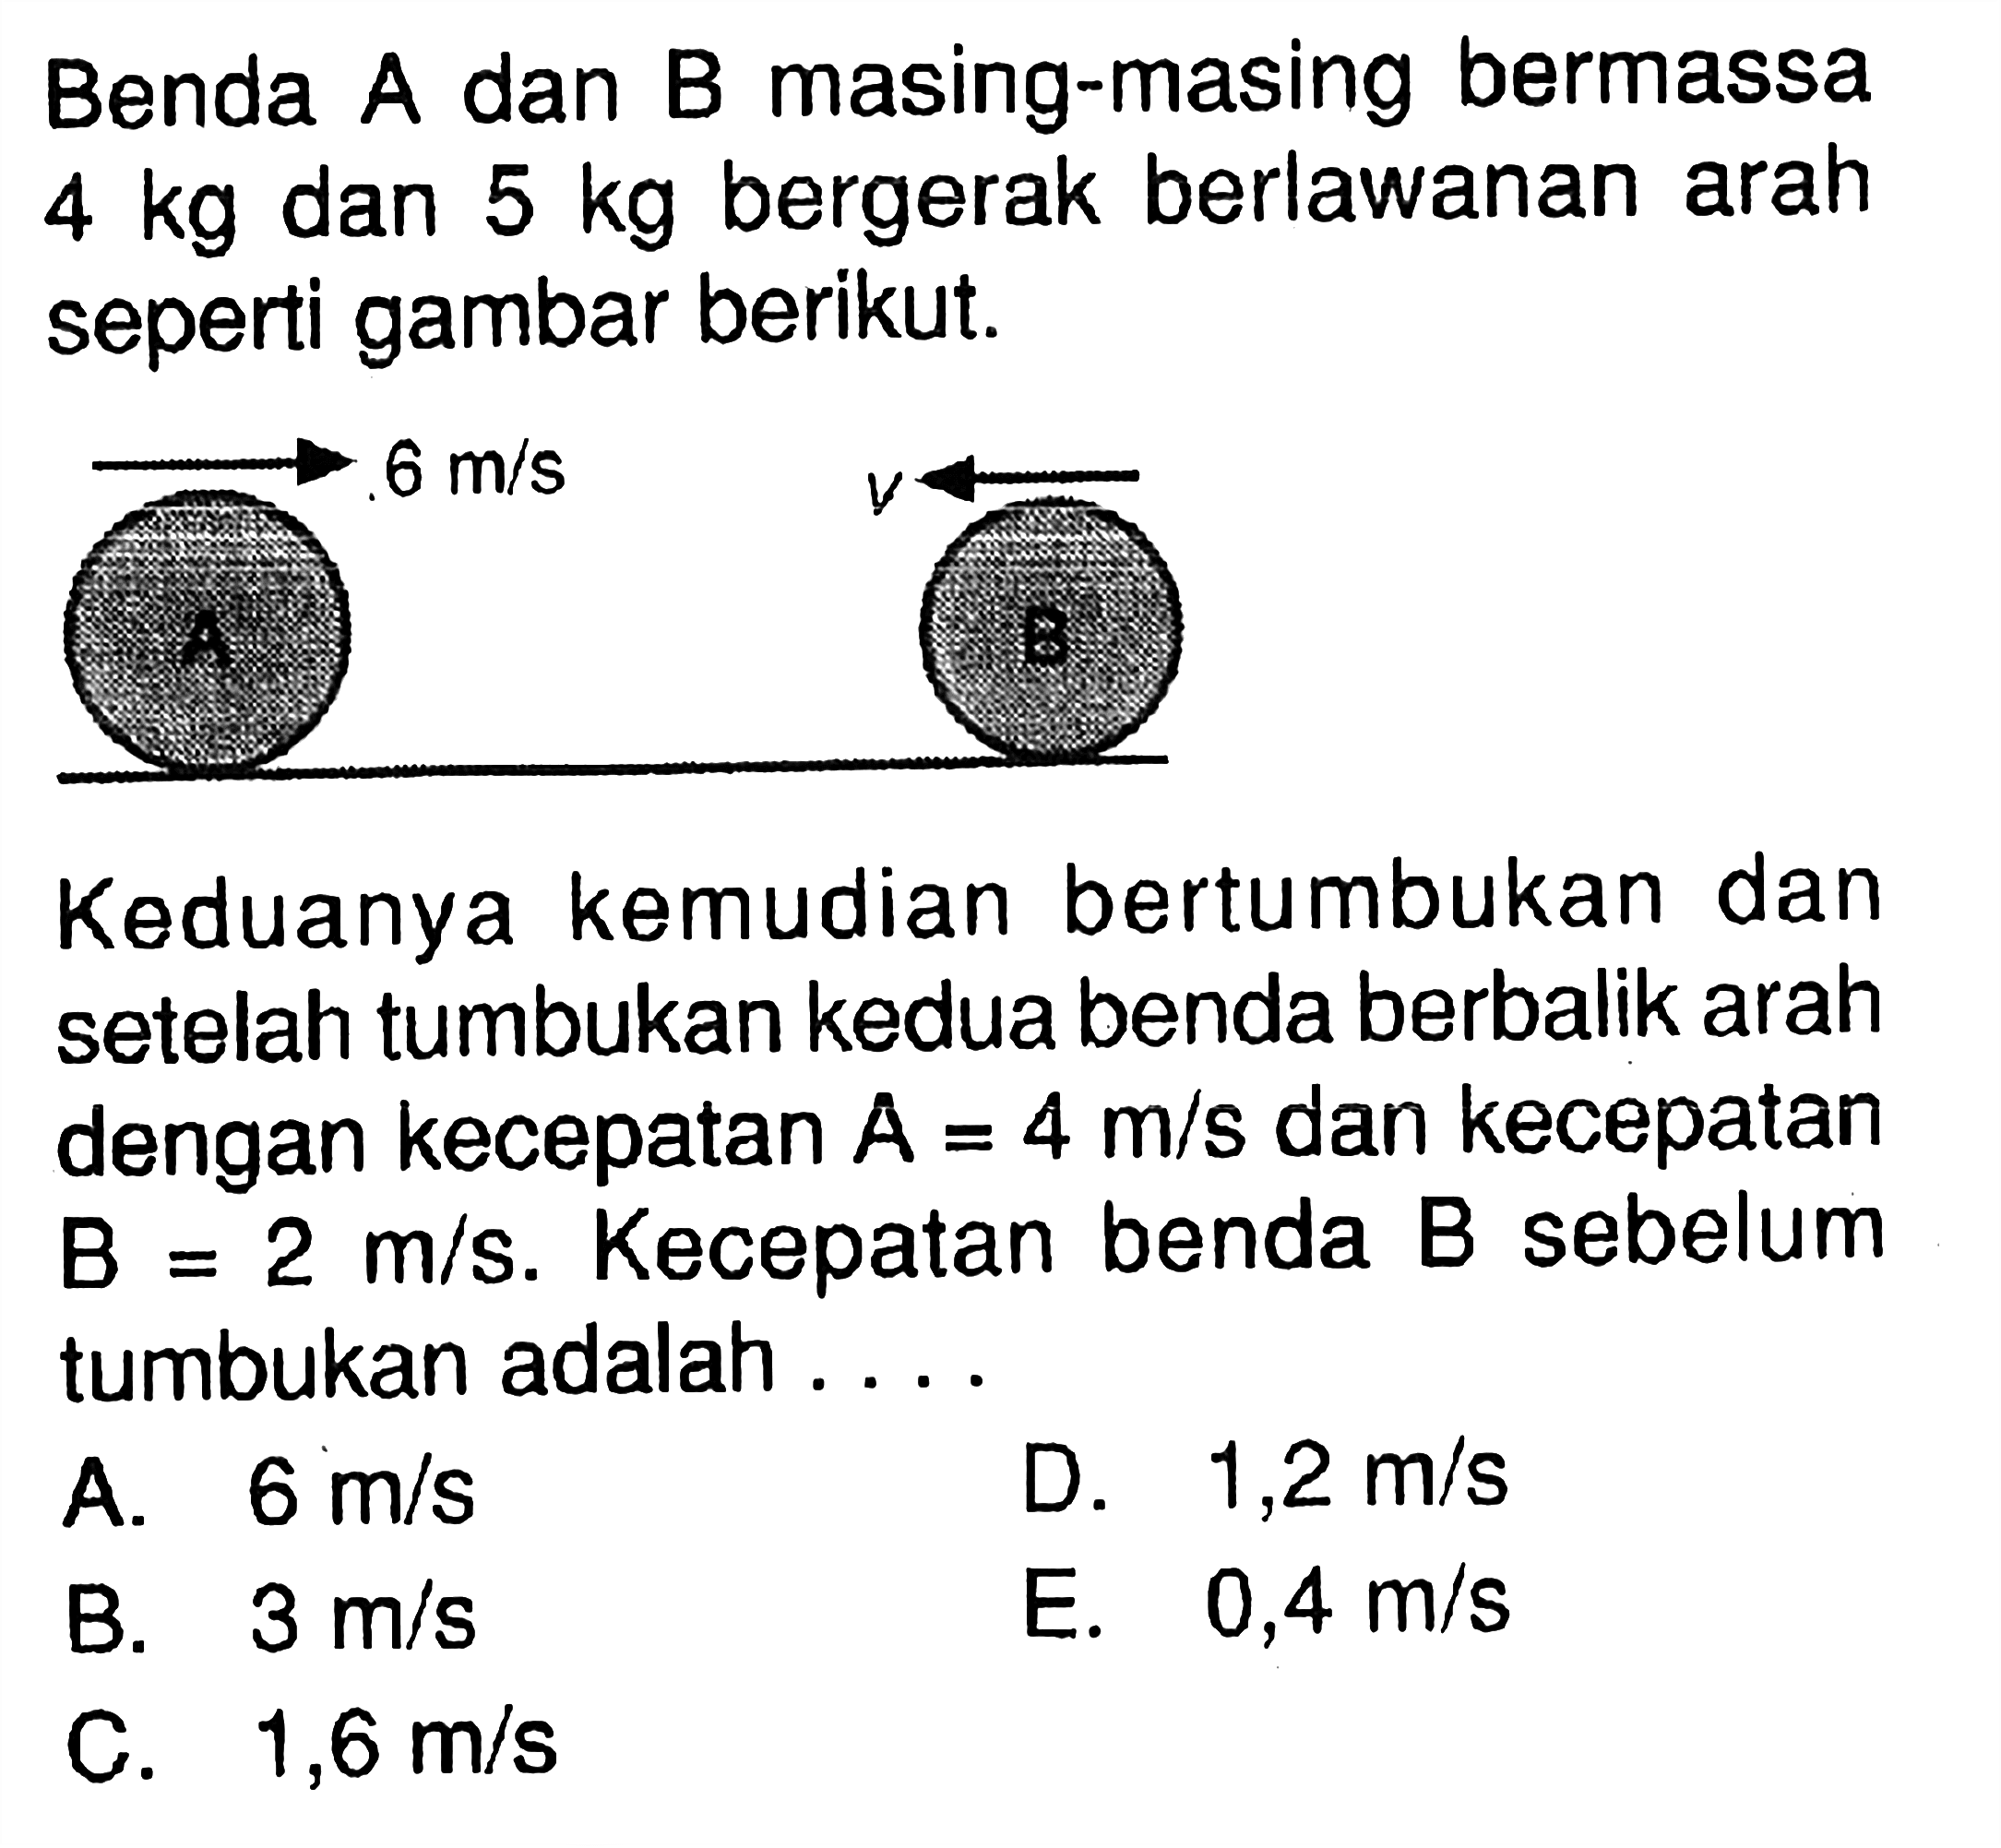 Benda A dan B masing-masing bermassa  4 kg  dan  5 kg  bergerak berlawanan arah seperti gambar berikut. 6 m/s v
Keduanya kemudian bertumbukan dan setelah tumbukan kedua benda berbalik arah dengan kecepatan  A=4 m/s  dan kecepatan  B=2 m/s.  Kecepatan benda B sebelum tumbukan adalah ...
